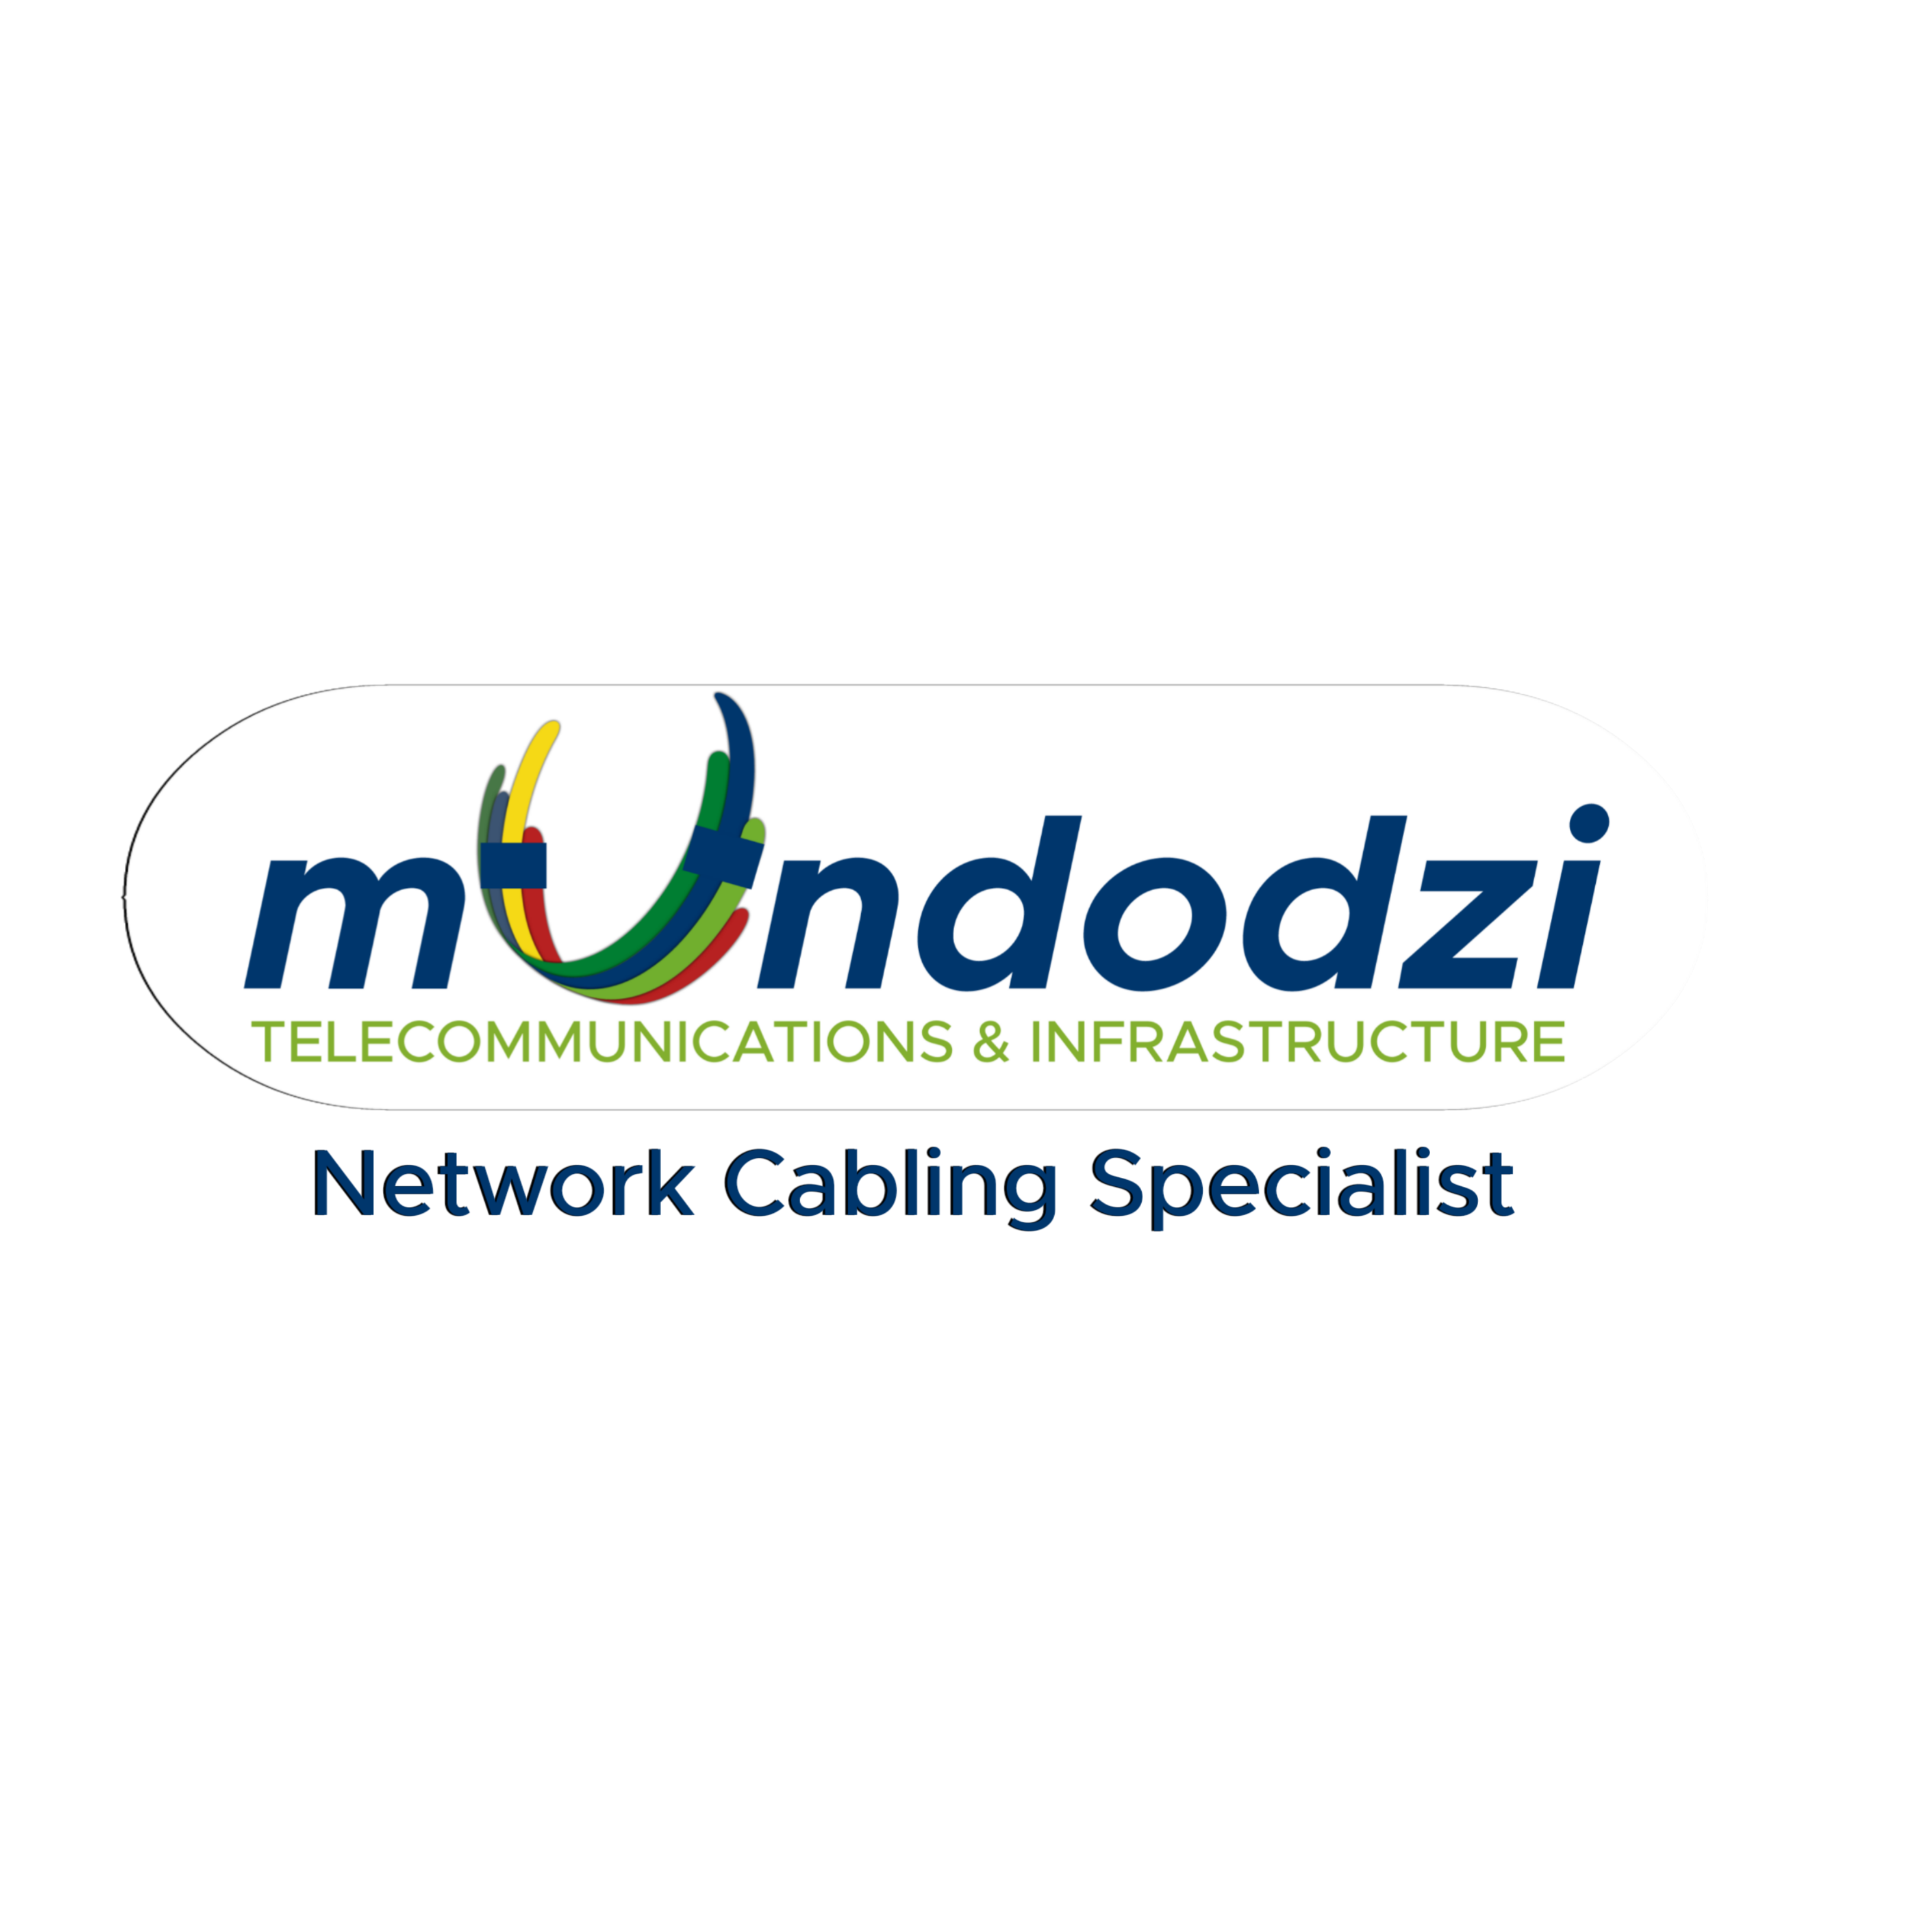 Mundodzi Telecomunications and Infrastructure